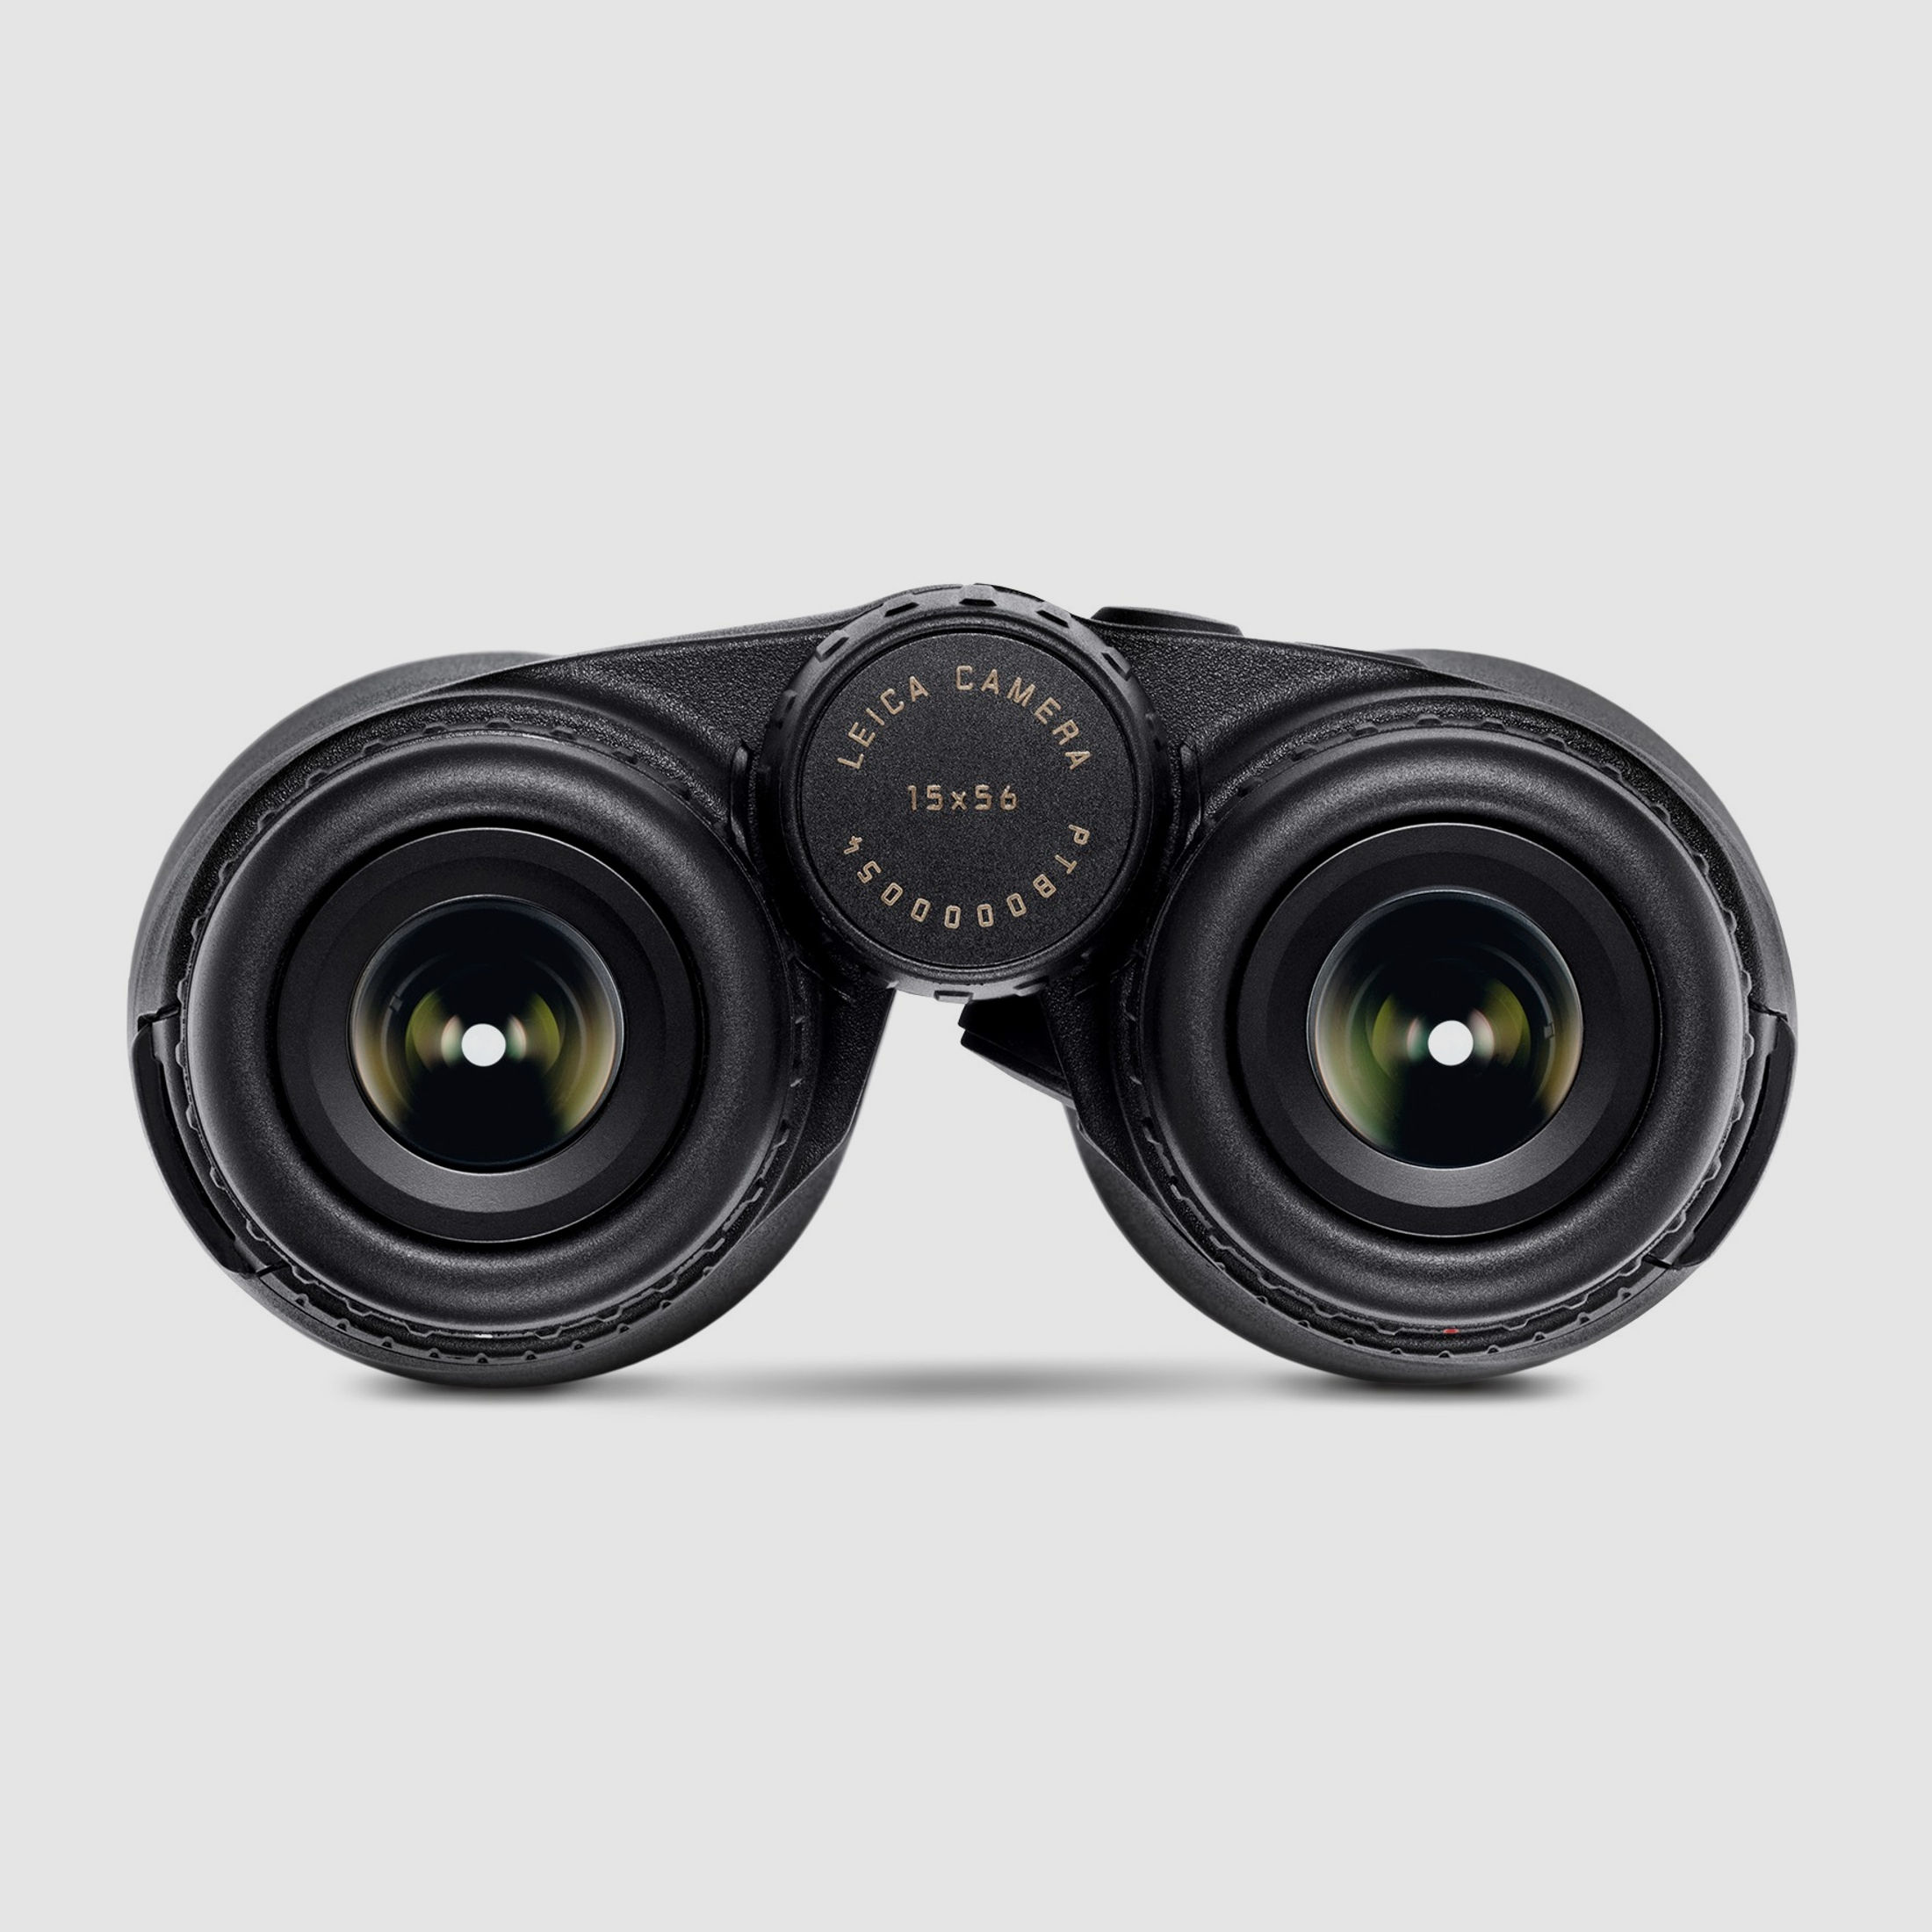 Leica Geovid 15x56 R Entfernungsmesser